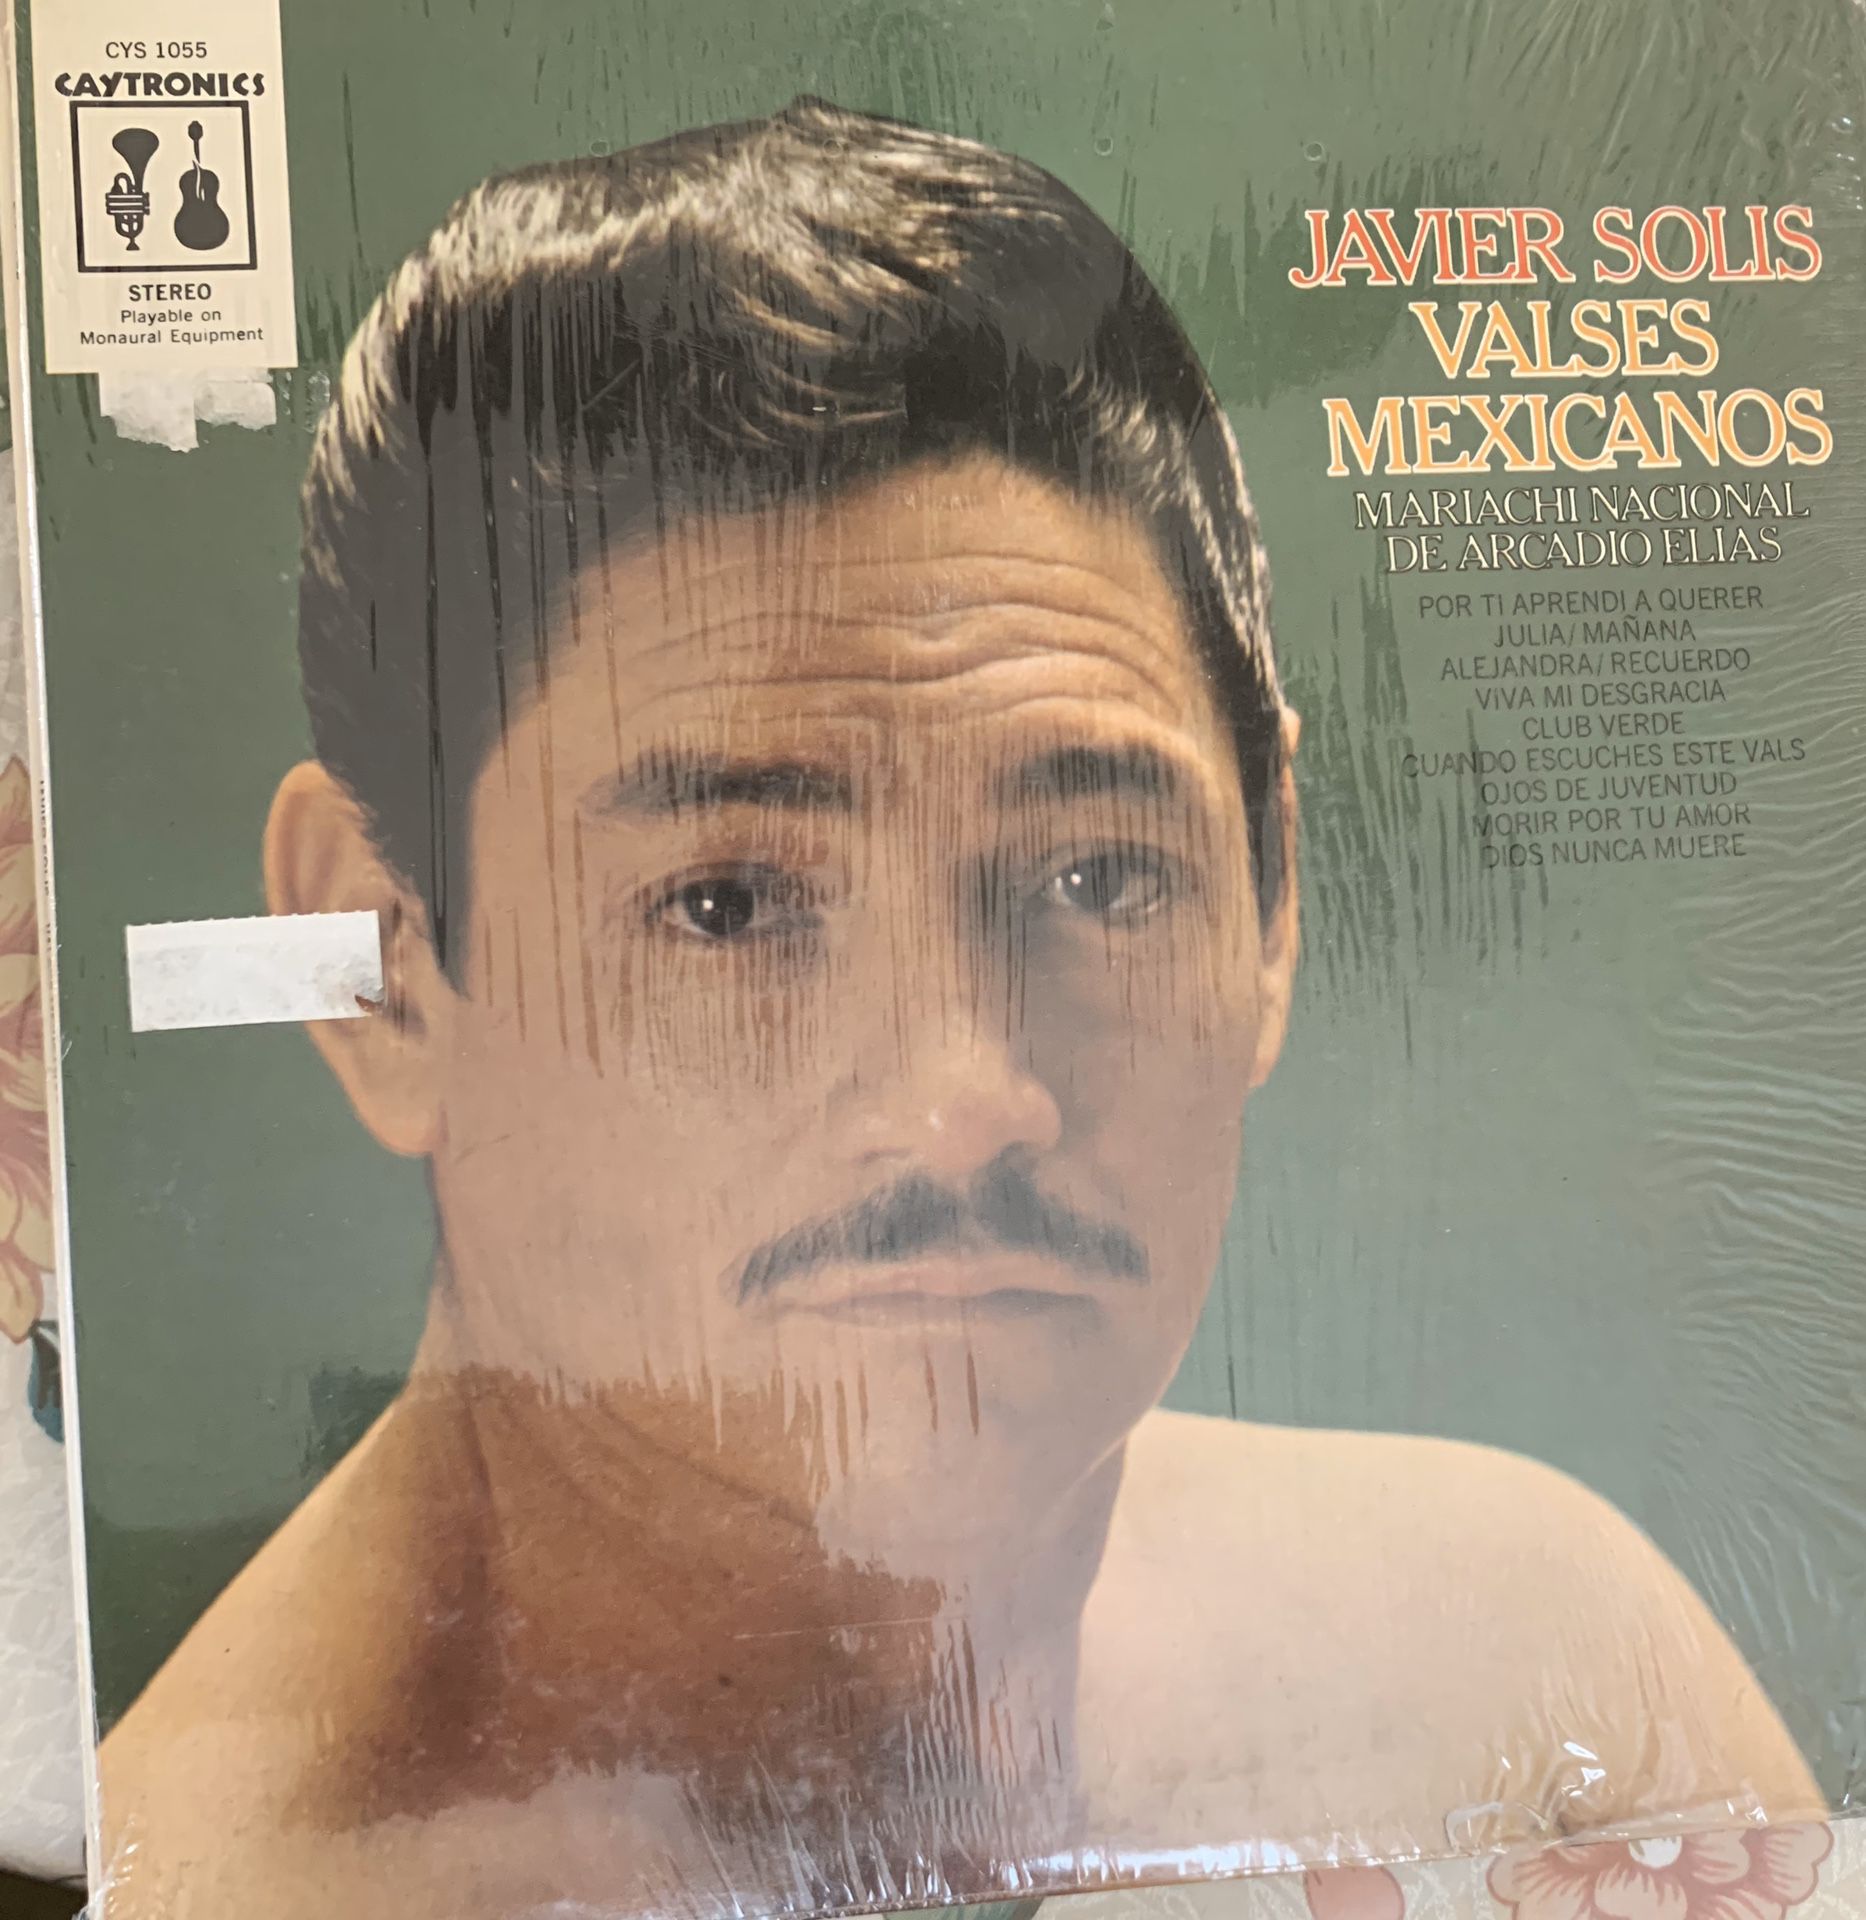 Javier Solís “Valses Mexicanos” vinyl